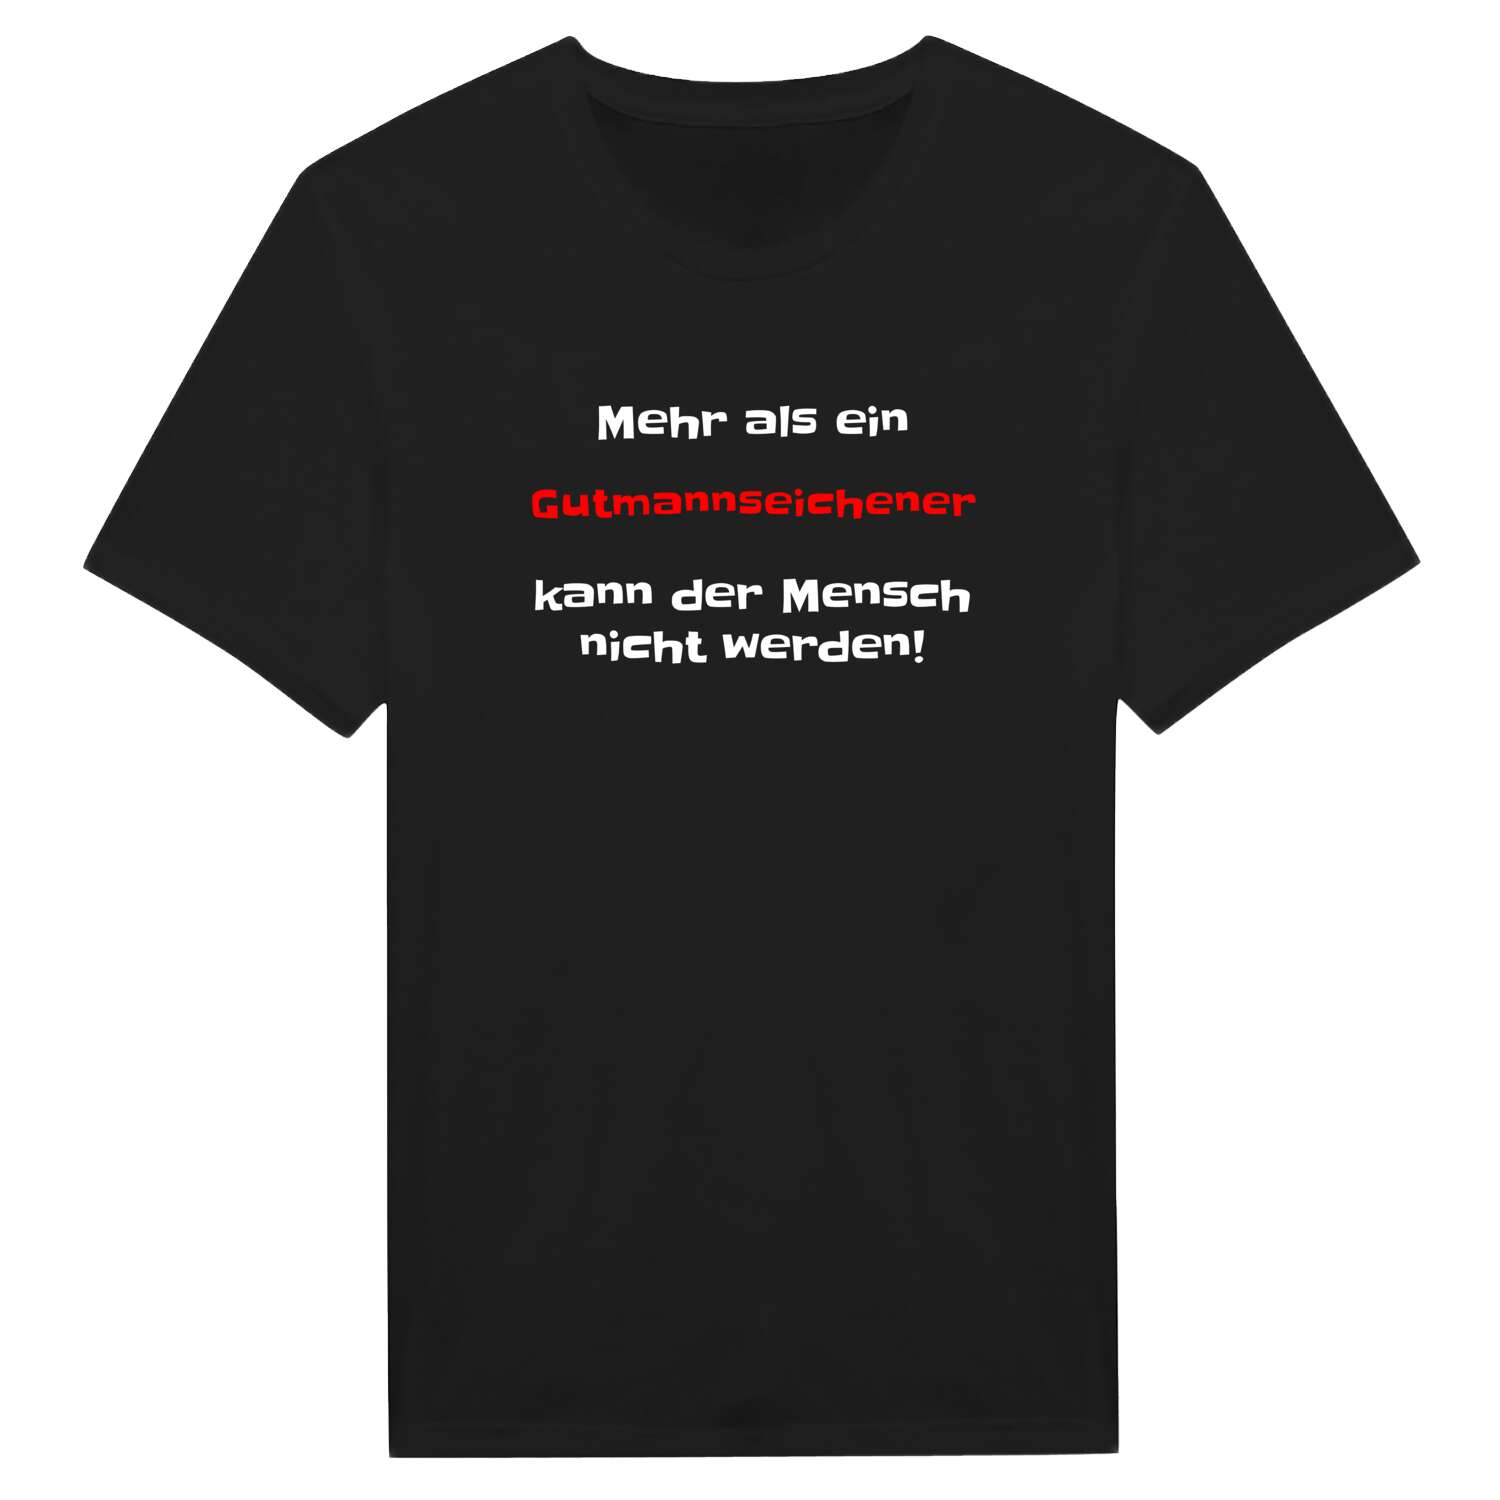 Gutmannseichen T-Shirt »Mehr als ein«